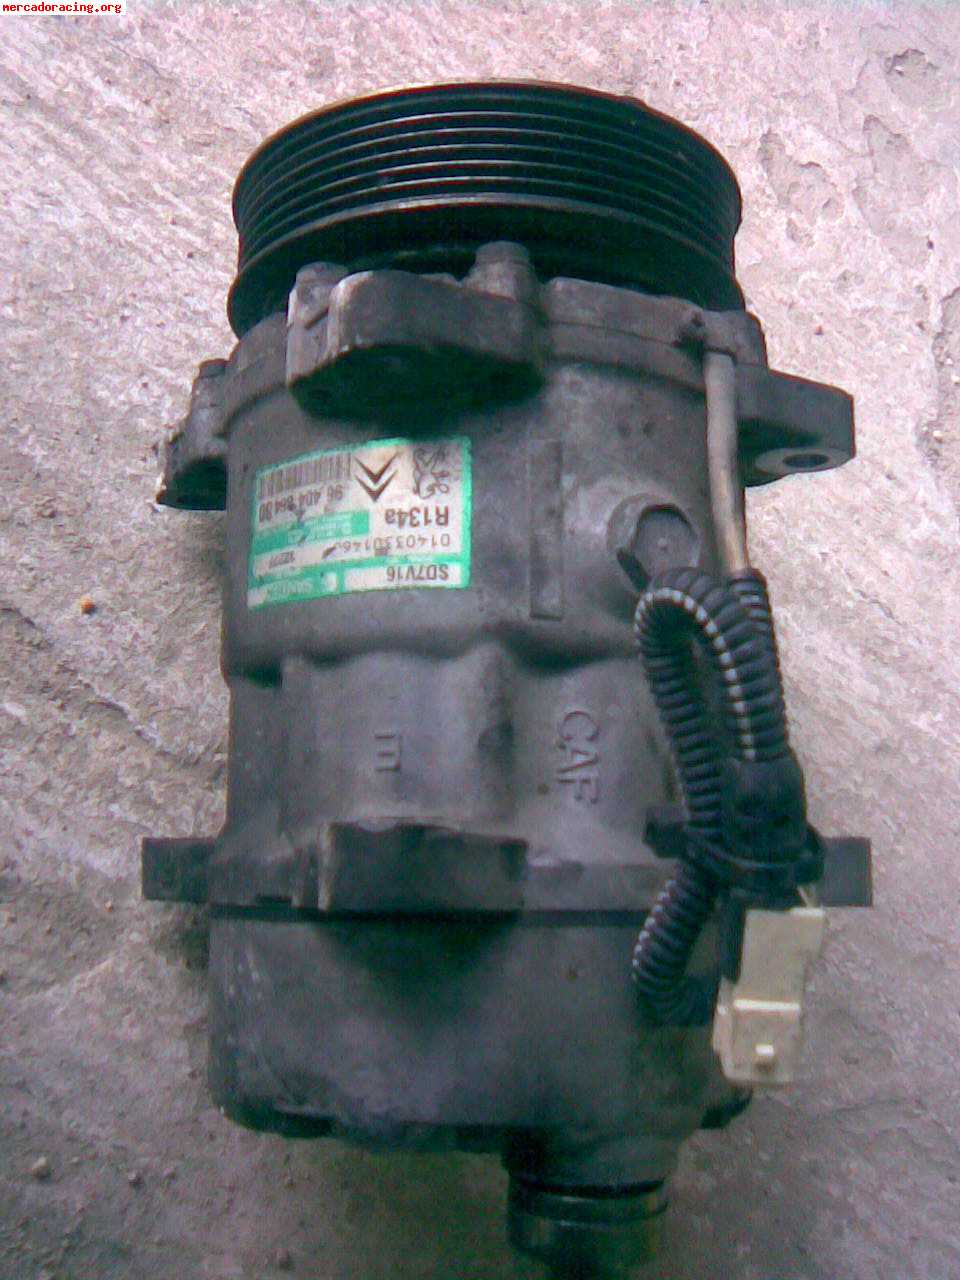 Compresor de aire y bomba de rireccion de xsara vts 167cv